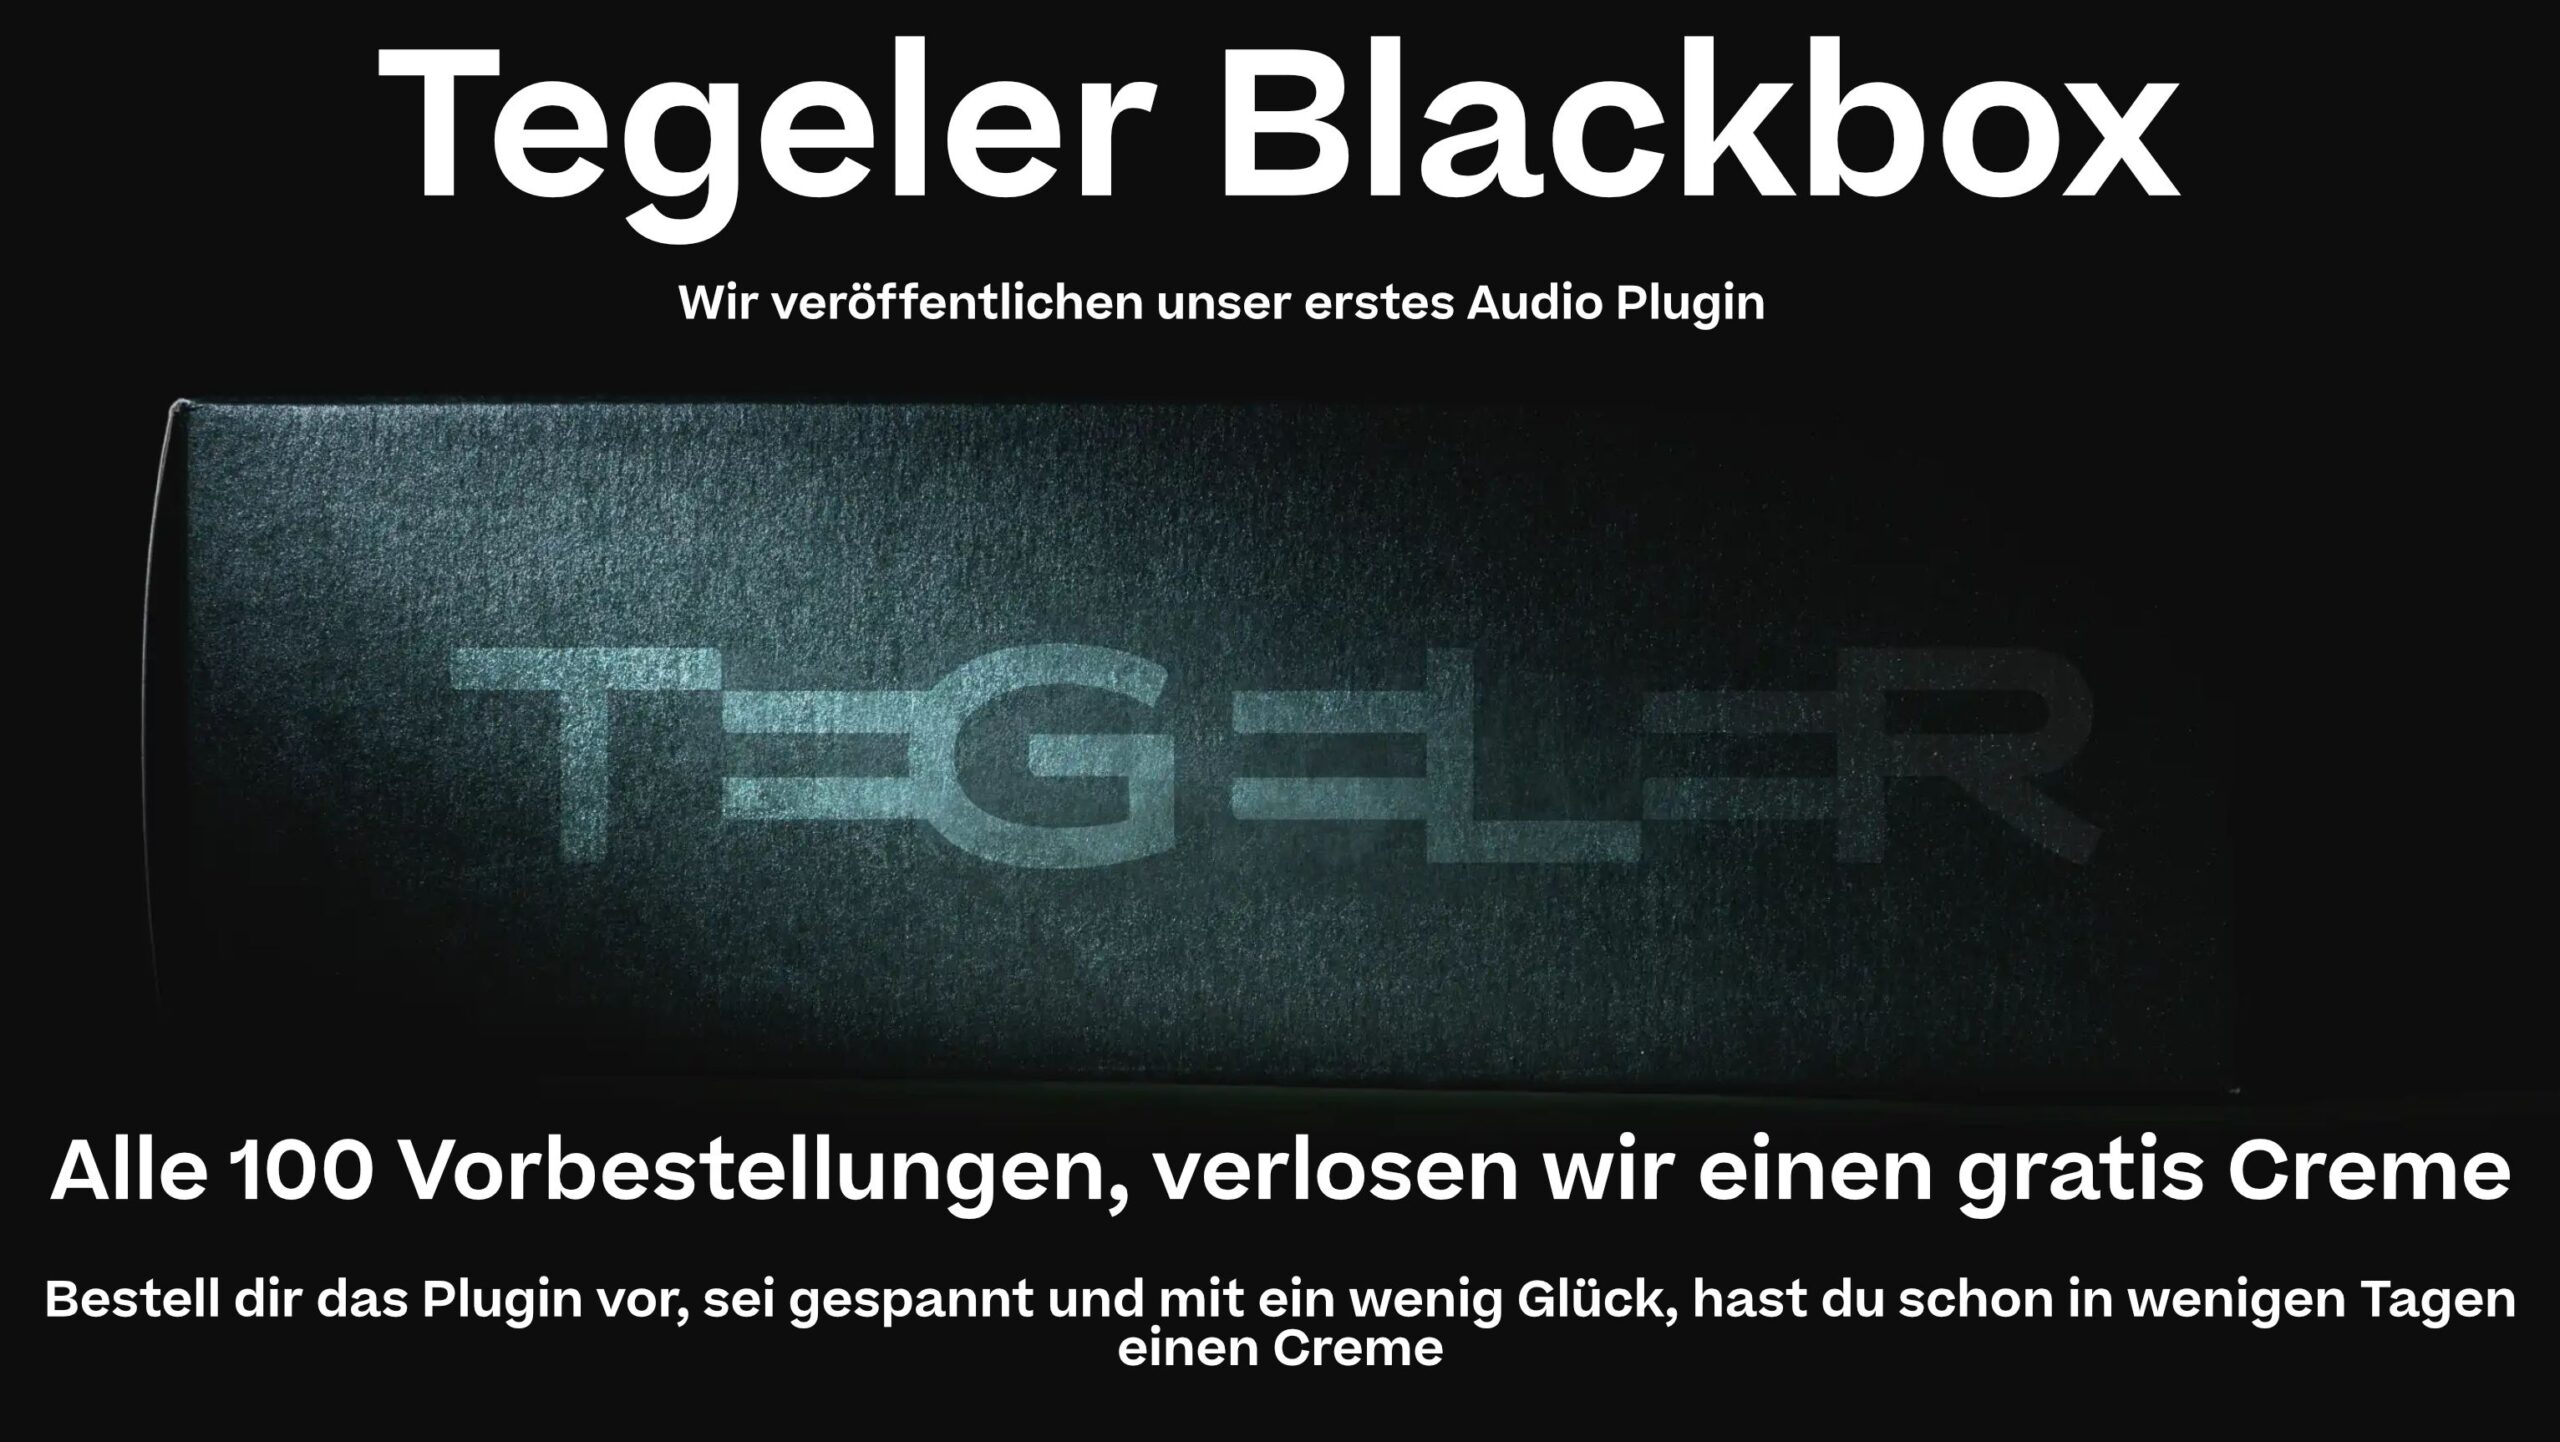 Tegler-Blackbox-De-scaled.jpg